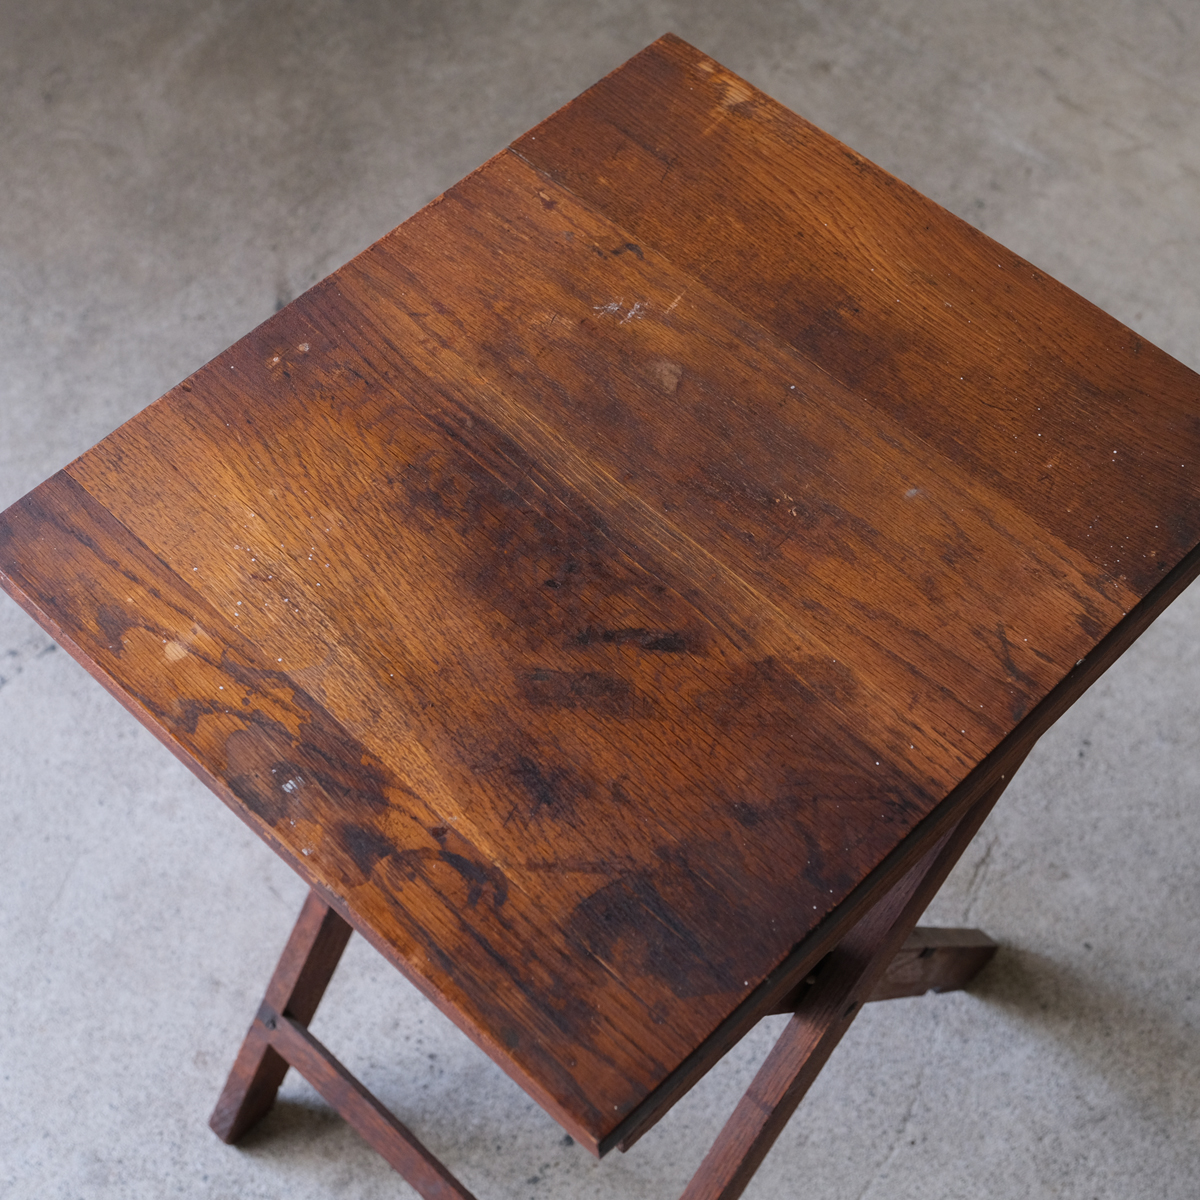 小振りなサイズながら、密度の高いオークの無垢材が使用された頑丈な造りのフォールディングテーブル